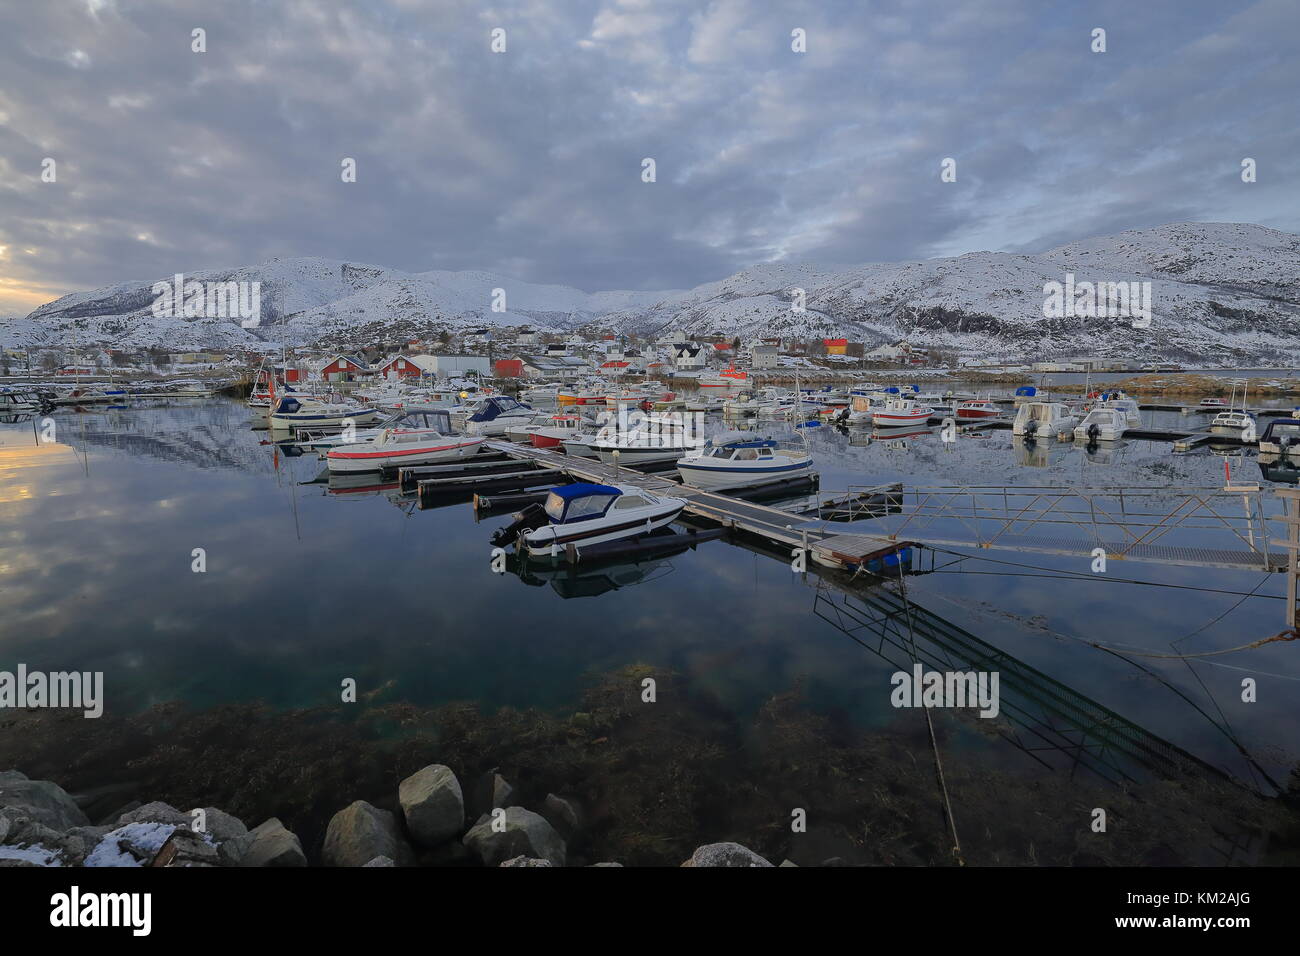 W.-reparti vista sul porto pieno di barche da pesca ormeggiate ai pontili galleggianti. cielo nuvoloso su bufjellet-nygardsfjellte colline e lodingsaksla mount Foto Stock